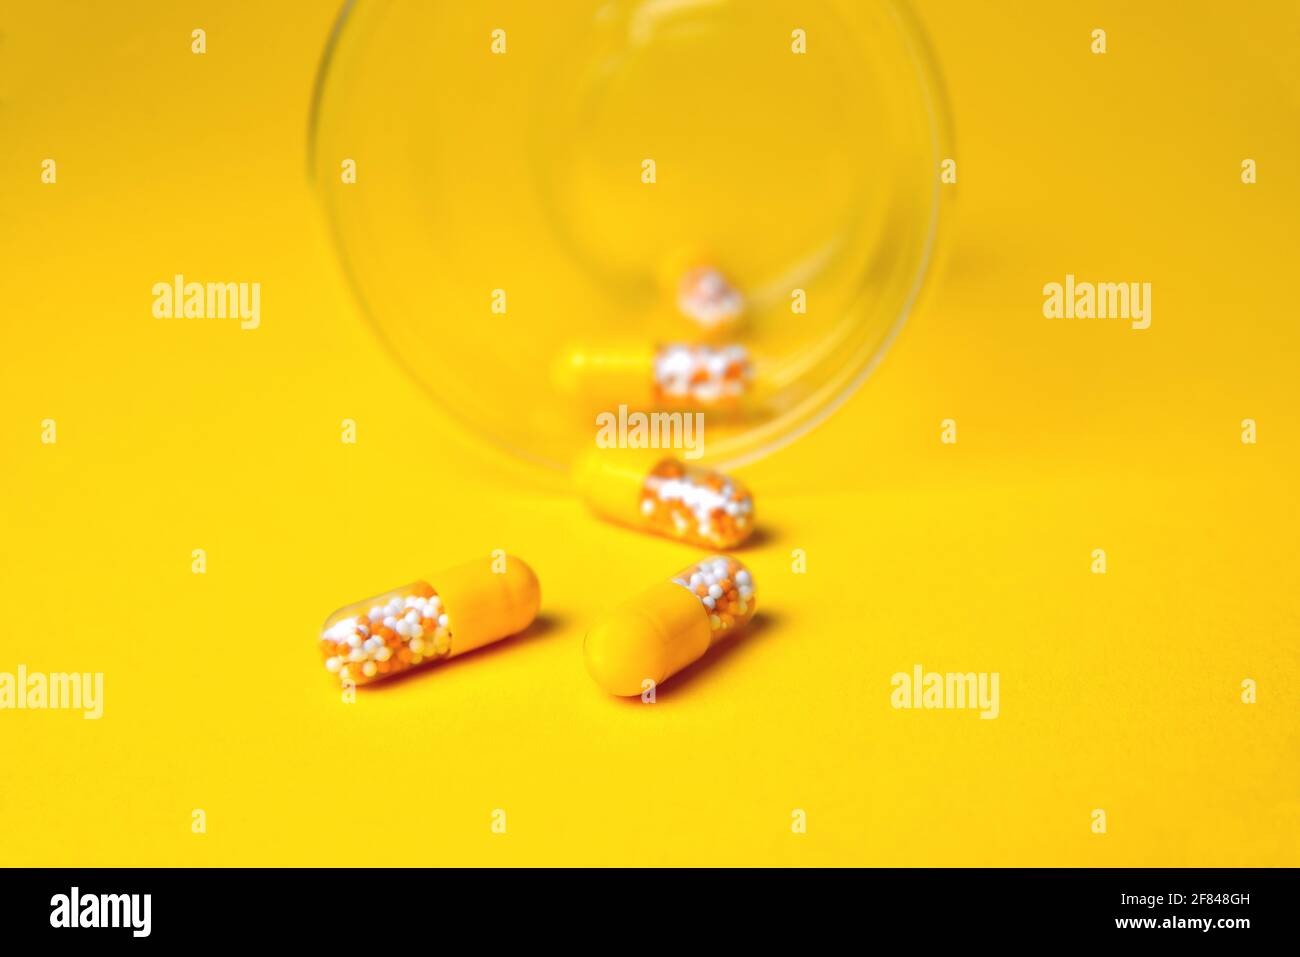 Kapseln in einem Glasbecher. Medizinische Tabletten, Vitamine in einem Granulat, in gelben Kapseln auf einem gelben Hintergrund. Blur als kreative Idee des Autors, Stockfoto